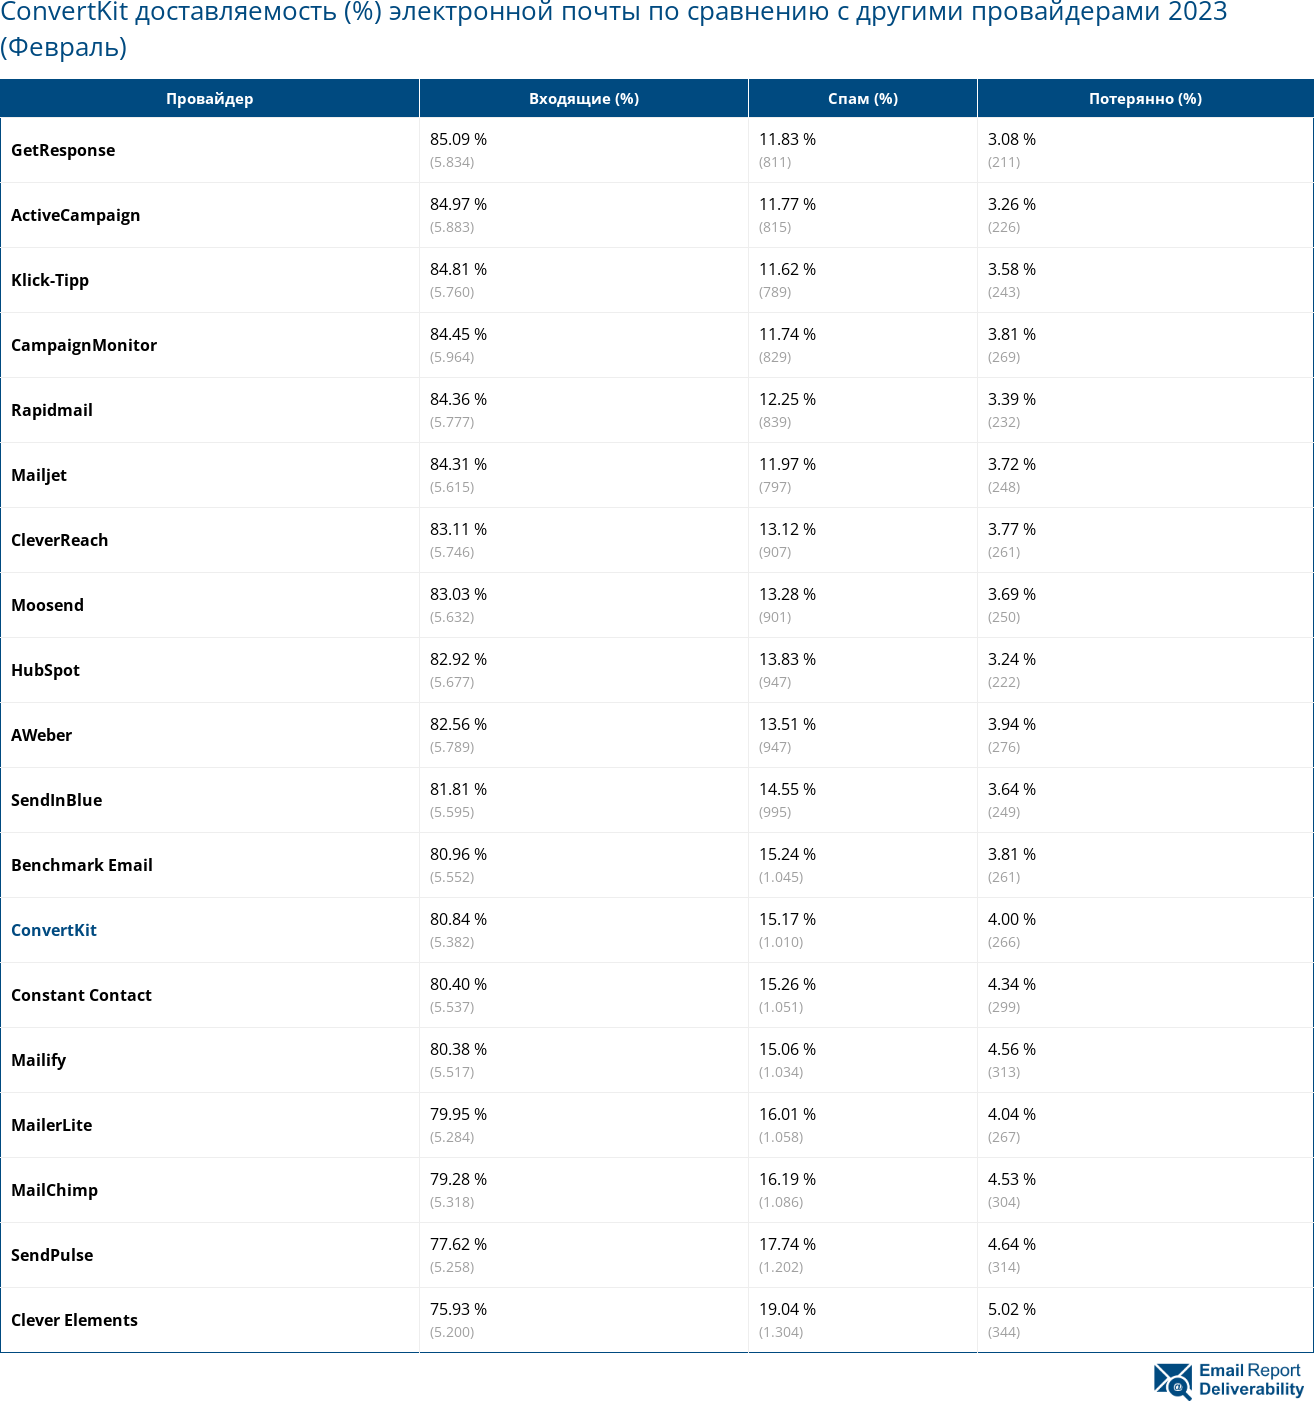 ConvertKit доставляемость (%) электронной почты по сравнению с другими провайдерами 2023 (Февраль)